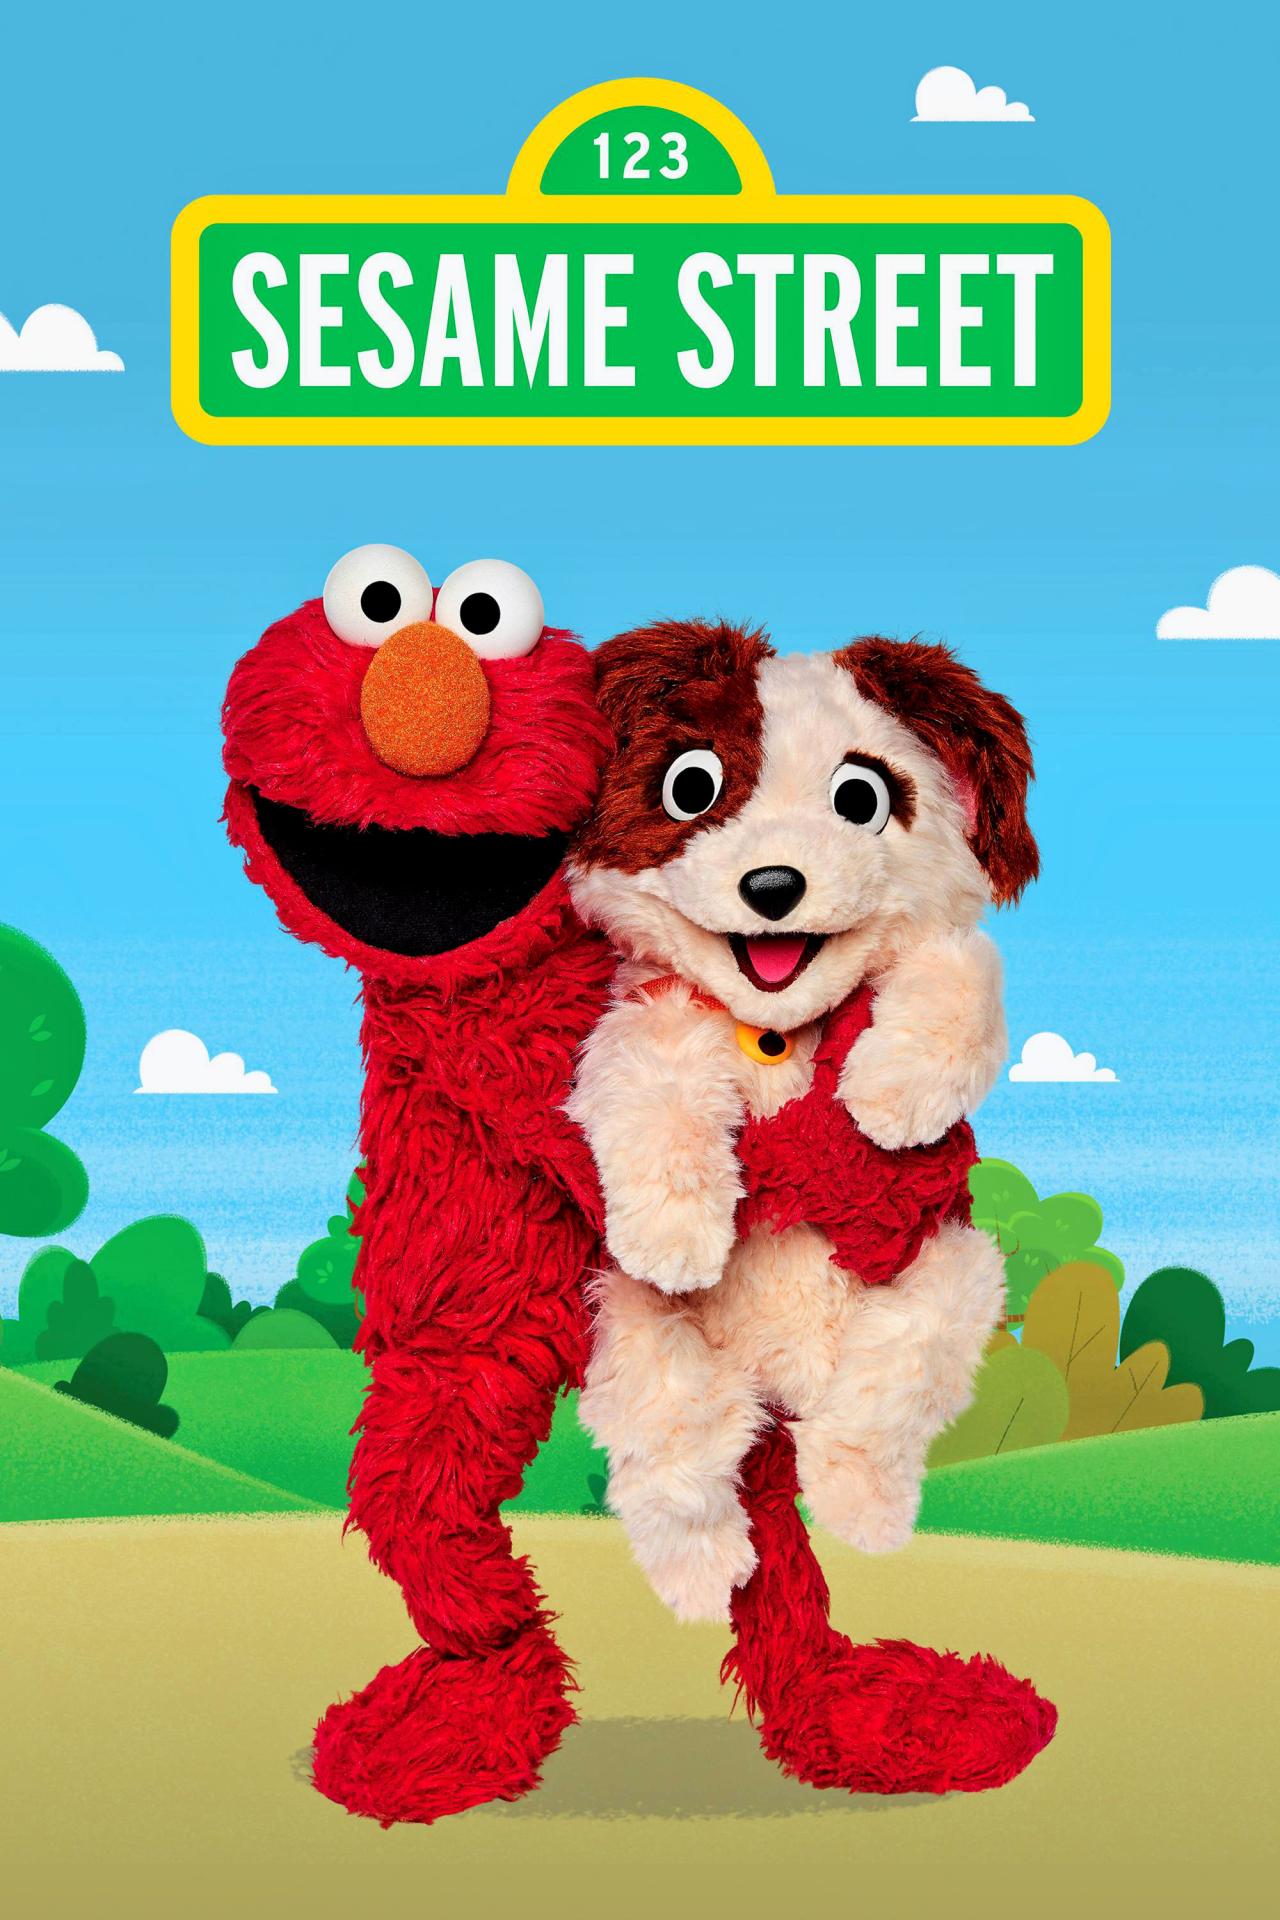 Les saisons de 1 Rue Sesame sont-elles disponibles sur Netflix ou autre ?